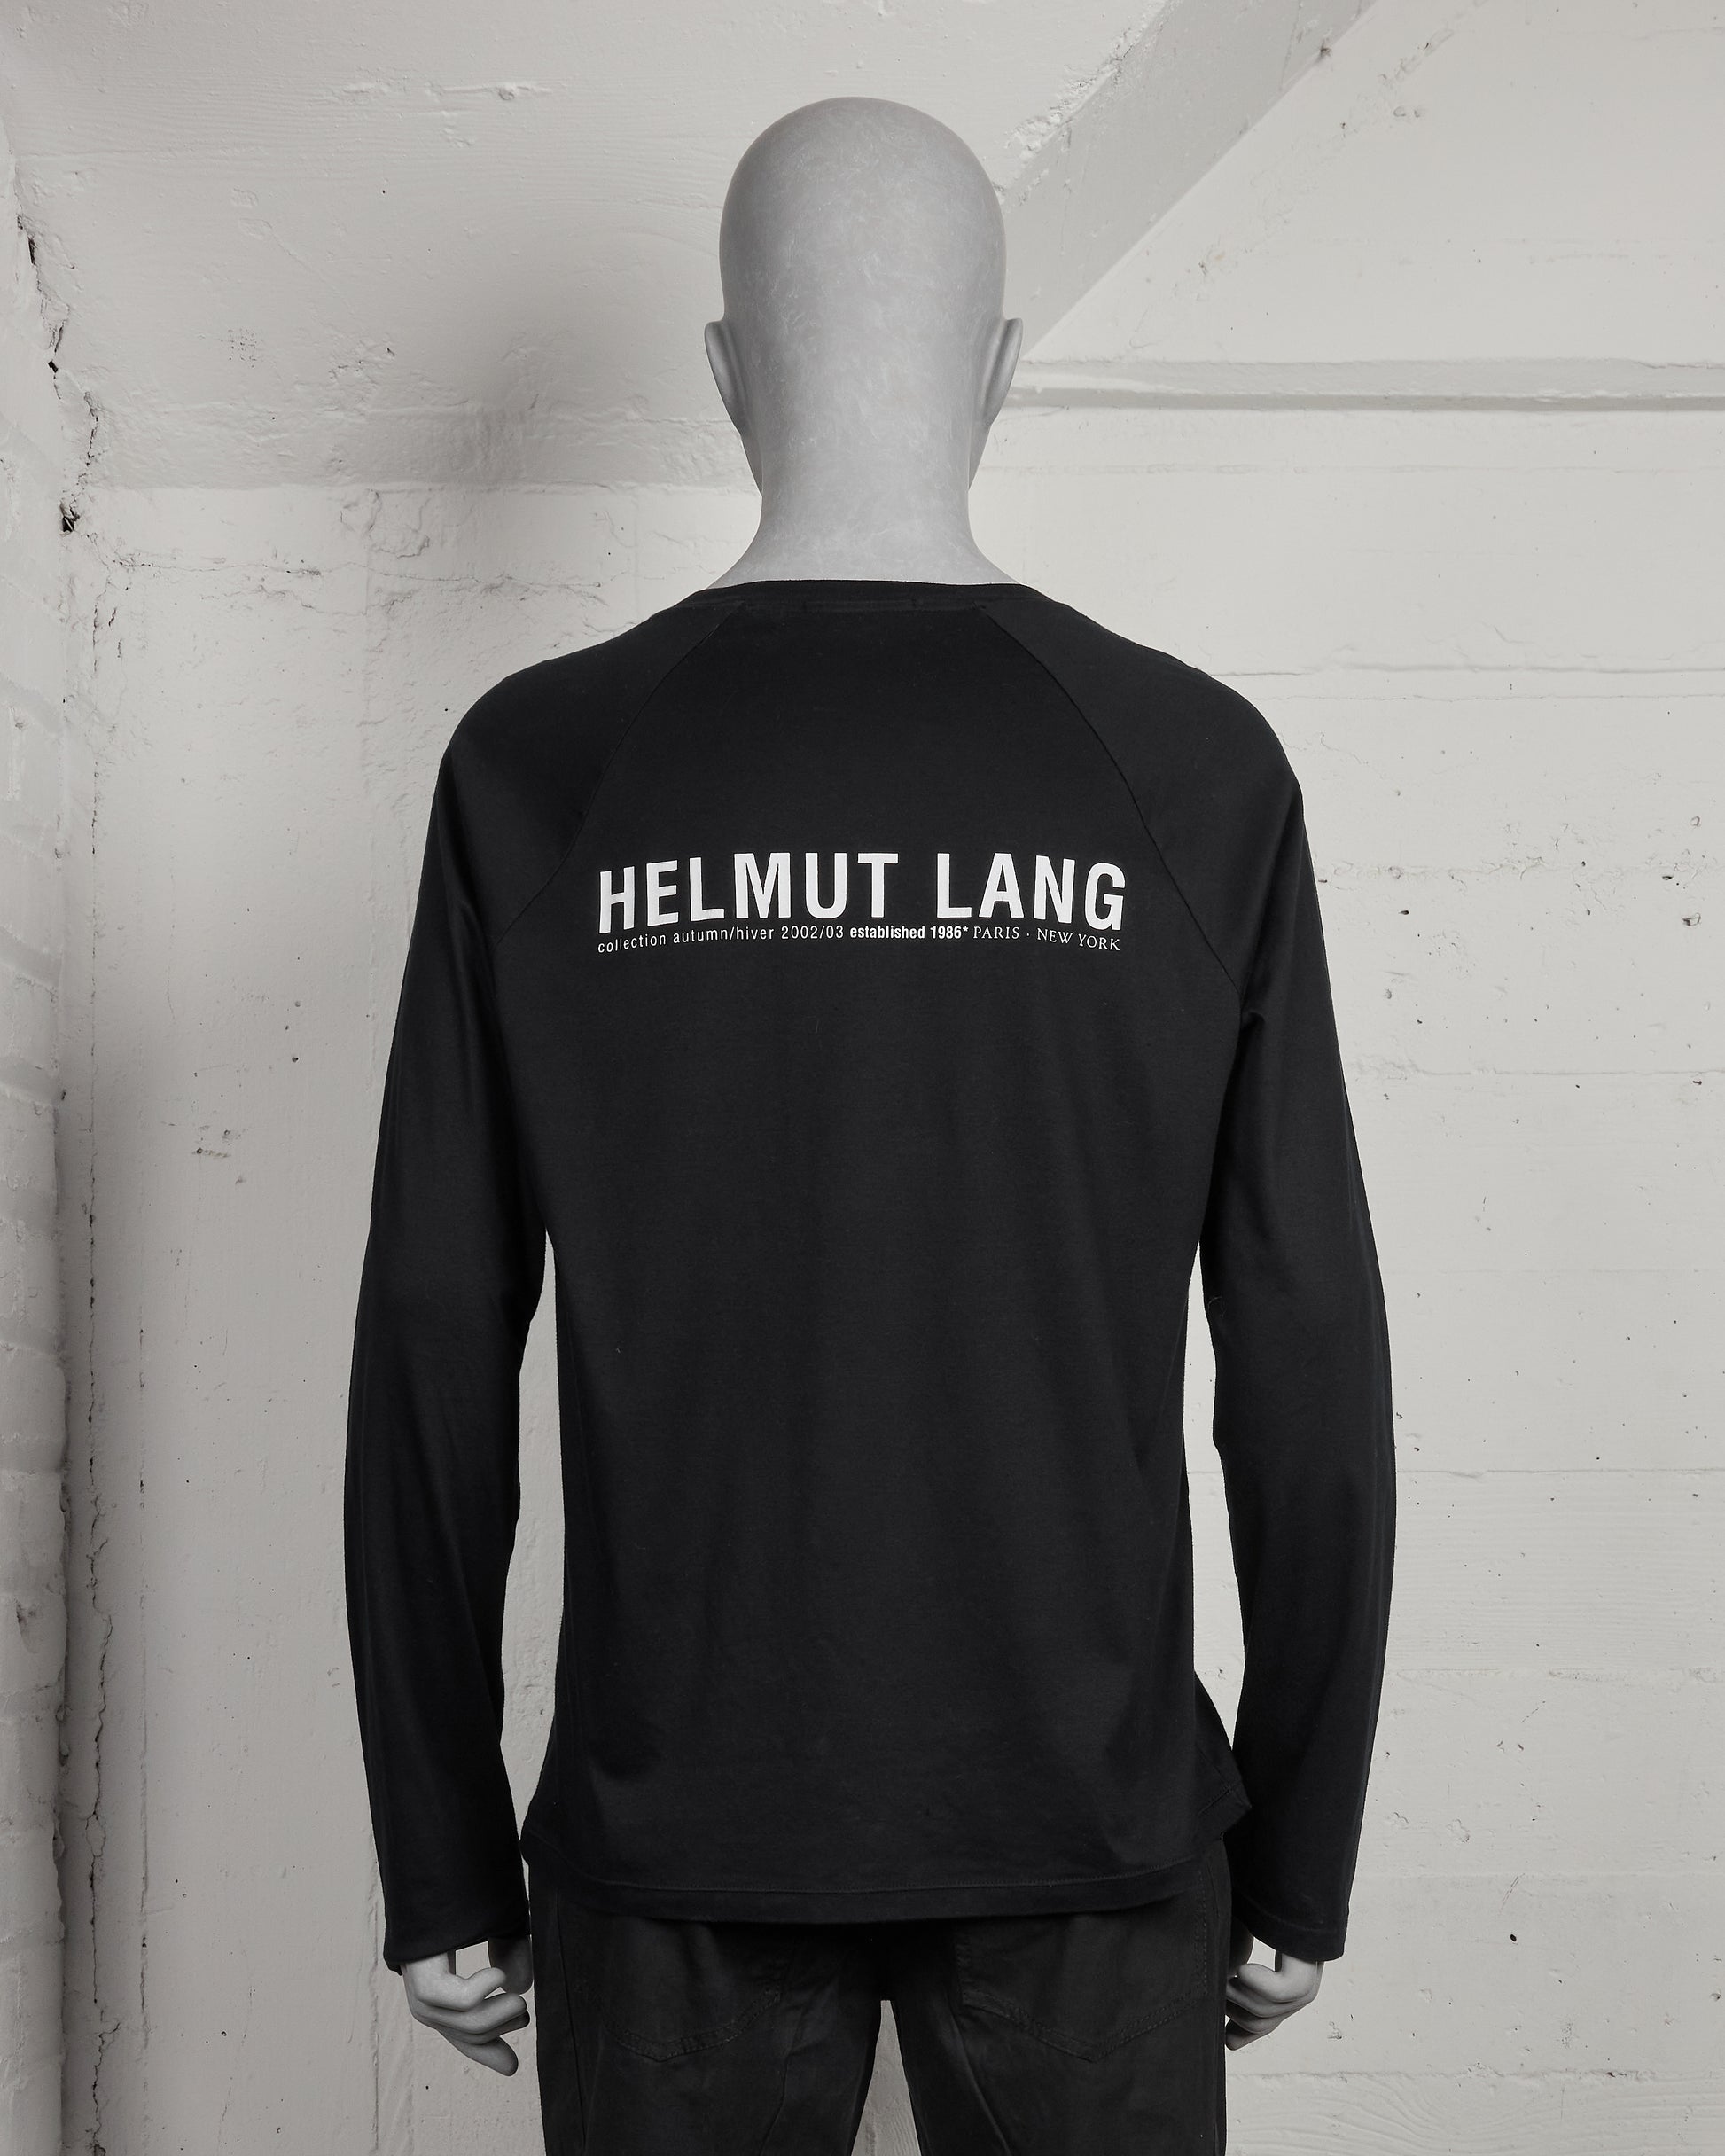 Helmut Lang Is Back